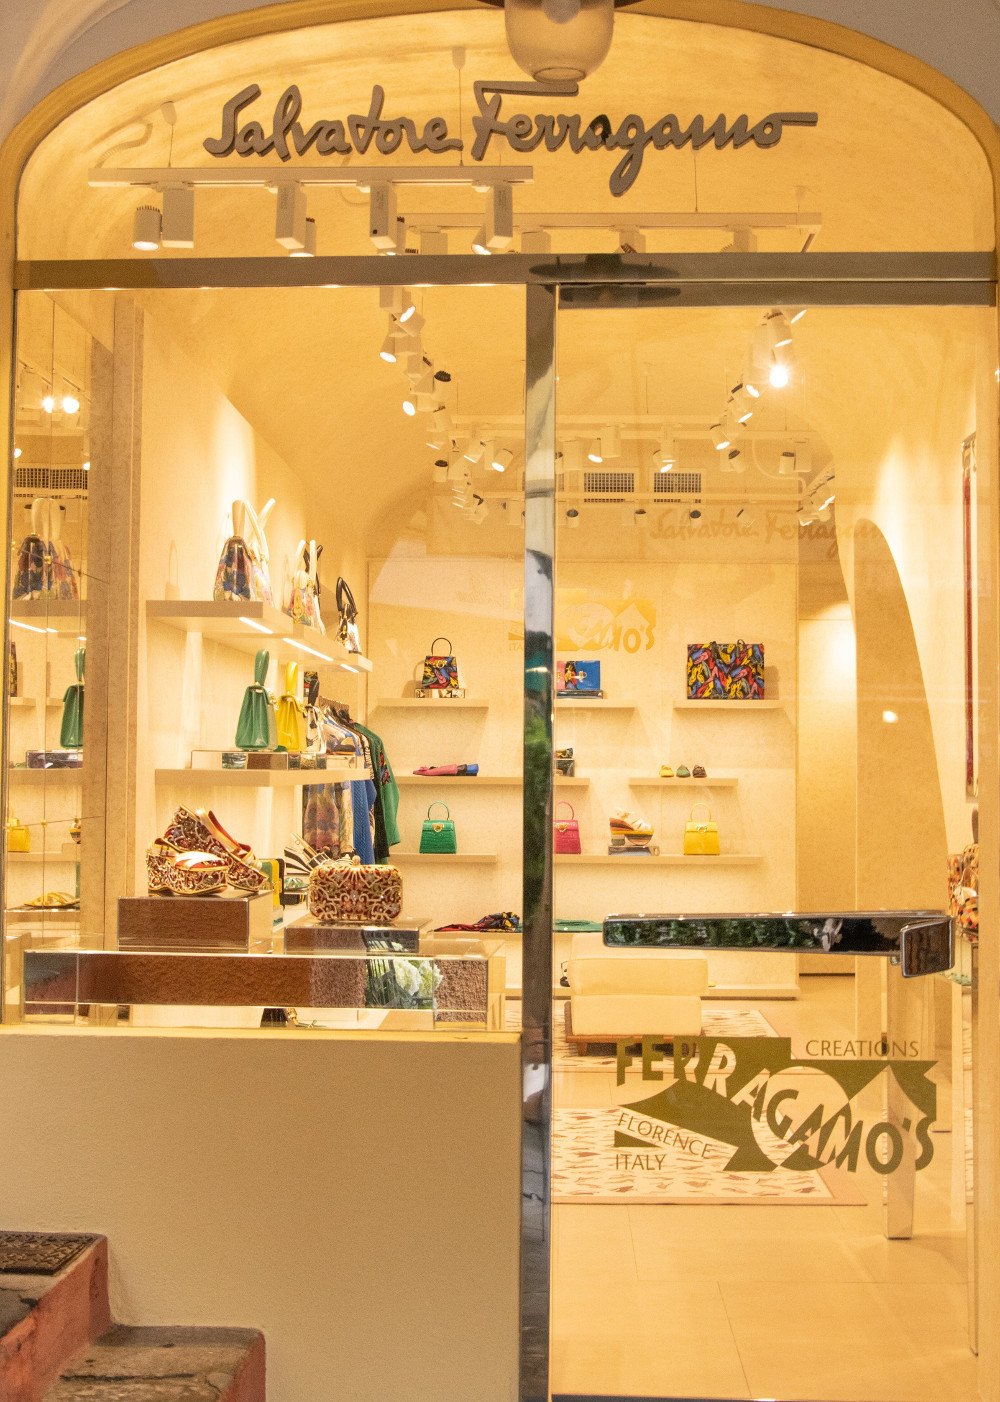 imagen 2 de Ferragamo inaugura su tercera tienda exclusiva “Creations” en el mundo.